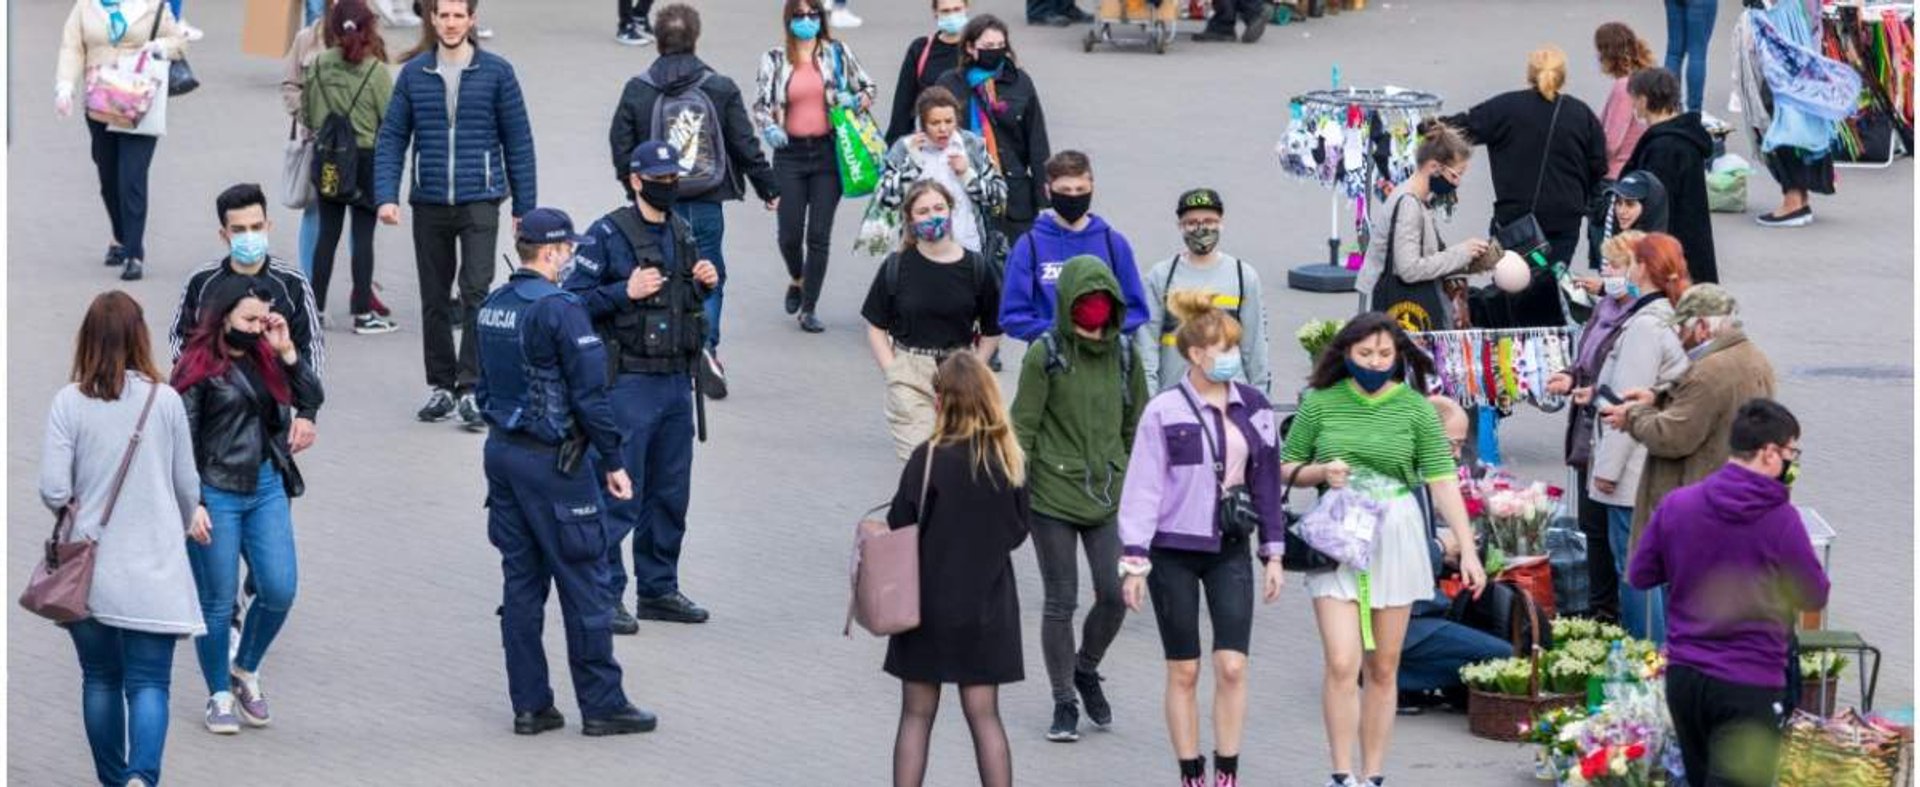 fot: Arkadiusz Ziolek/ East News. Warszawa. 26.05.2020. n/z Tlum pieszych na chodniku w maskach ochronnych.